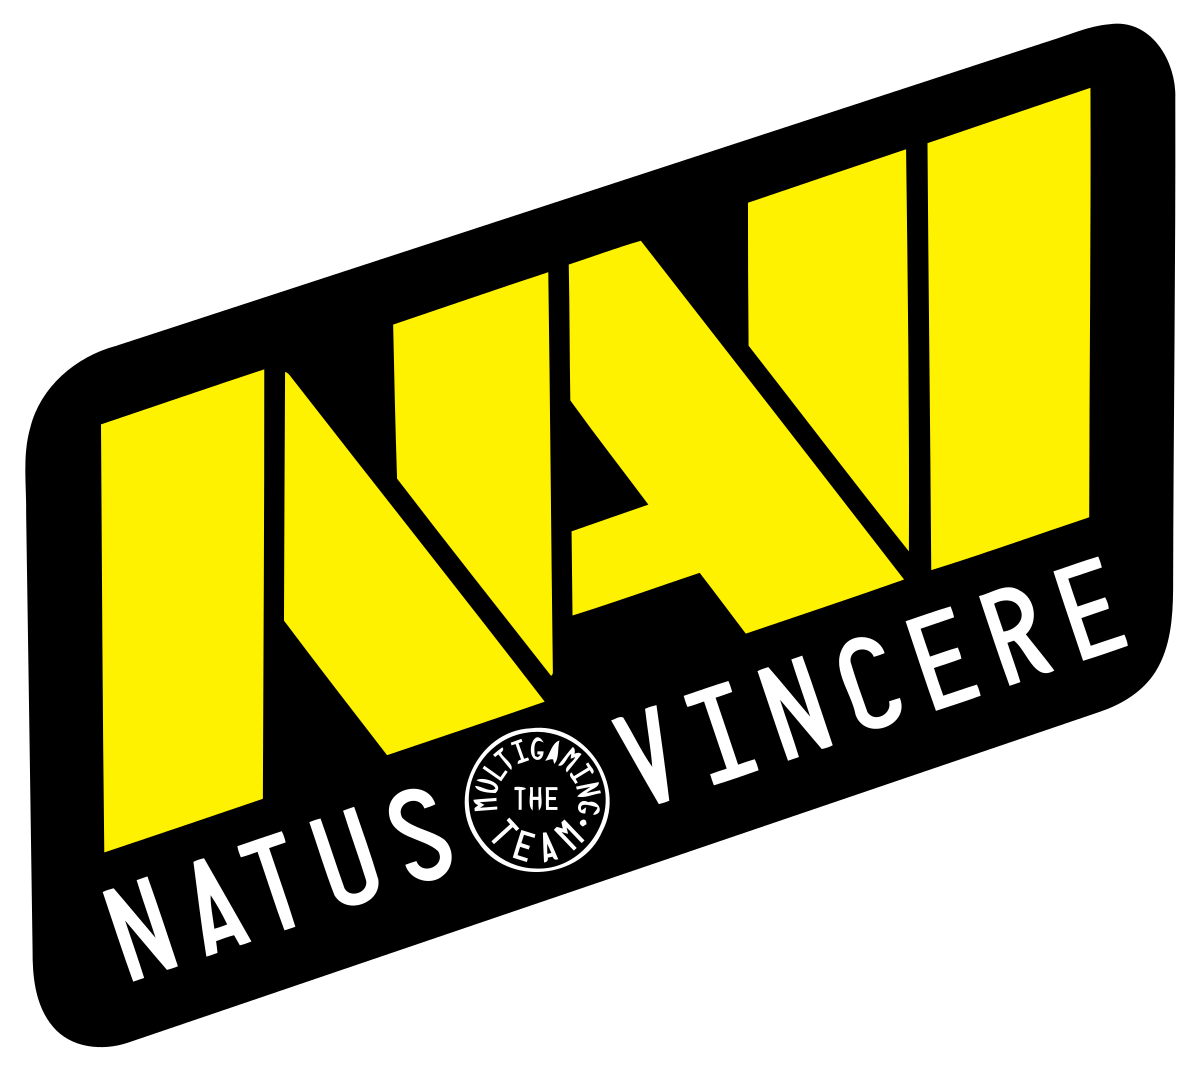 Natus Vincere стала лучшей командой в пистолетных раундах